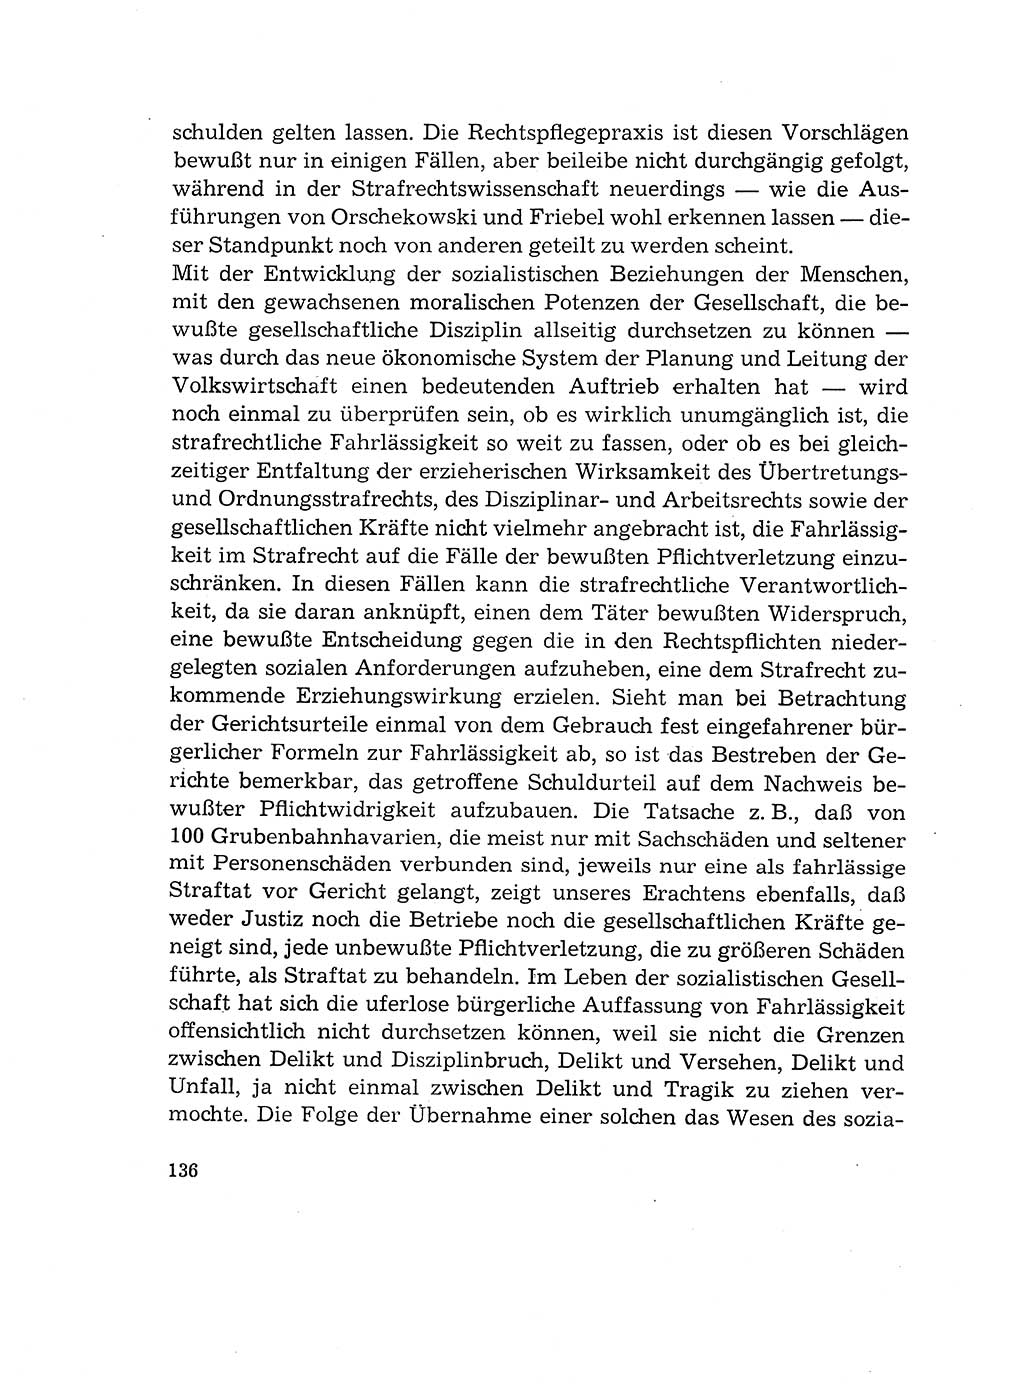 Verantwortung und Schuld im neuen Strafgesetzbuch (StGB) [Deutsche Demokratische Republik (DDR)] 1964, Seite 136 (Verantw. Sch. StGB DDR 1964, S. 136)